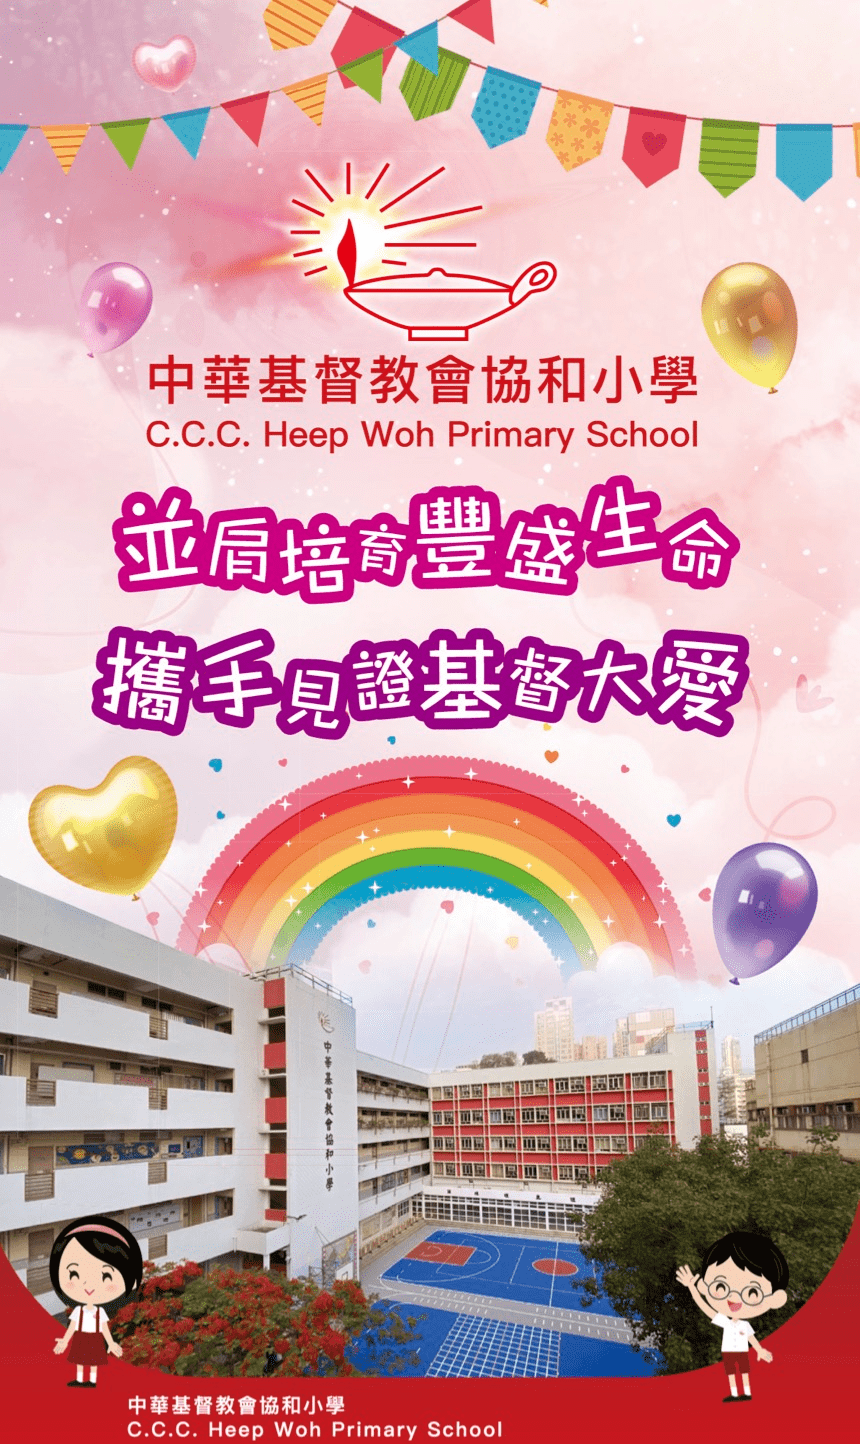 《中華基督教會協和小學──學校簡介》